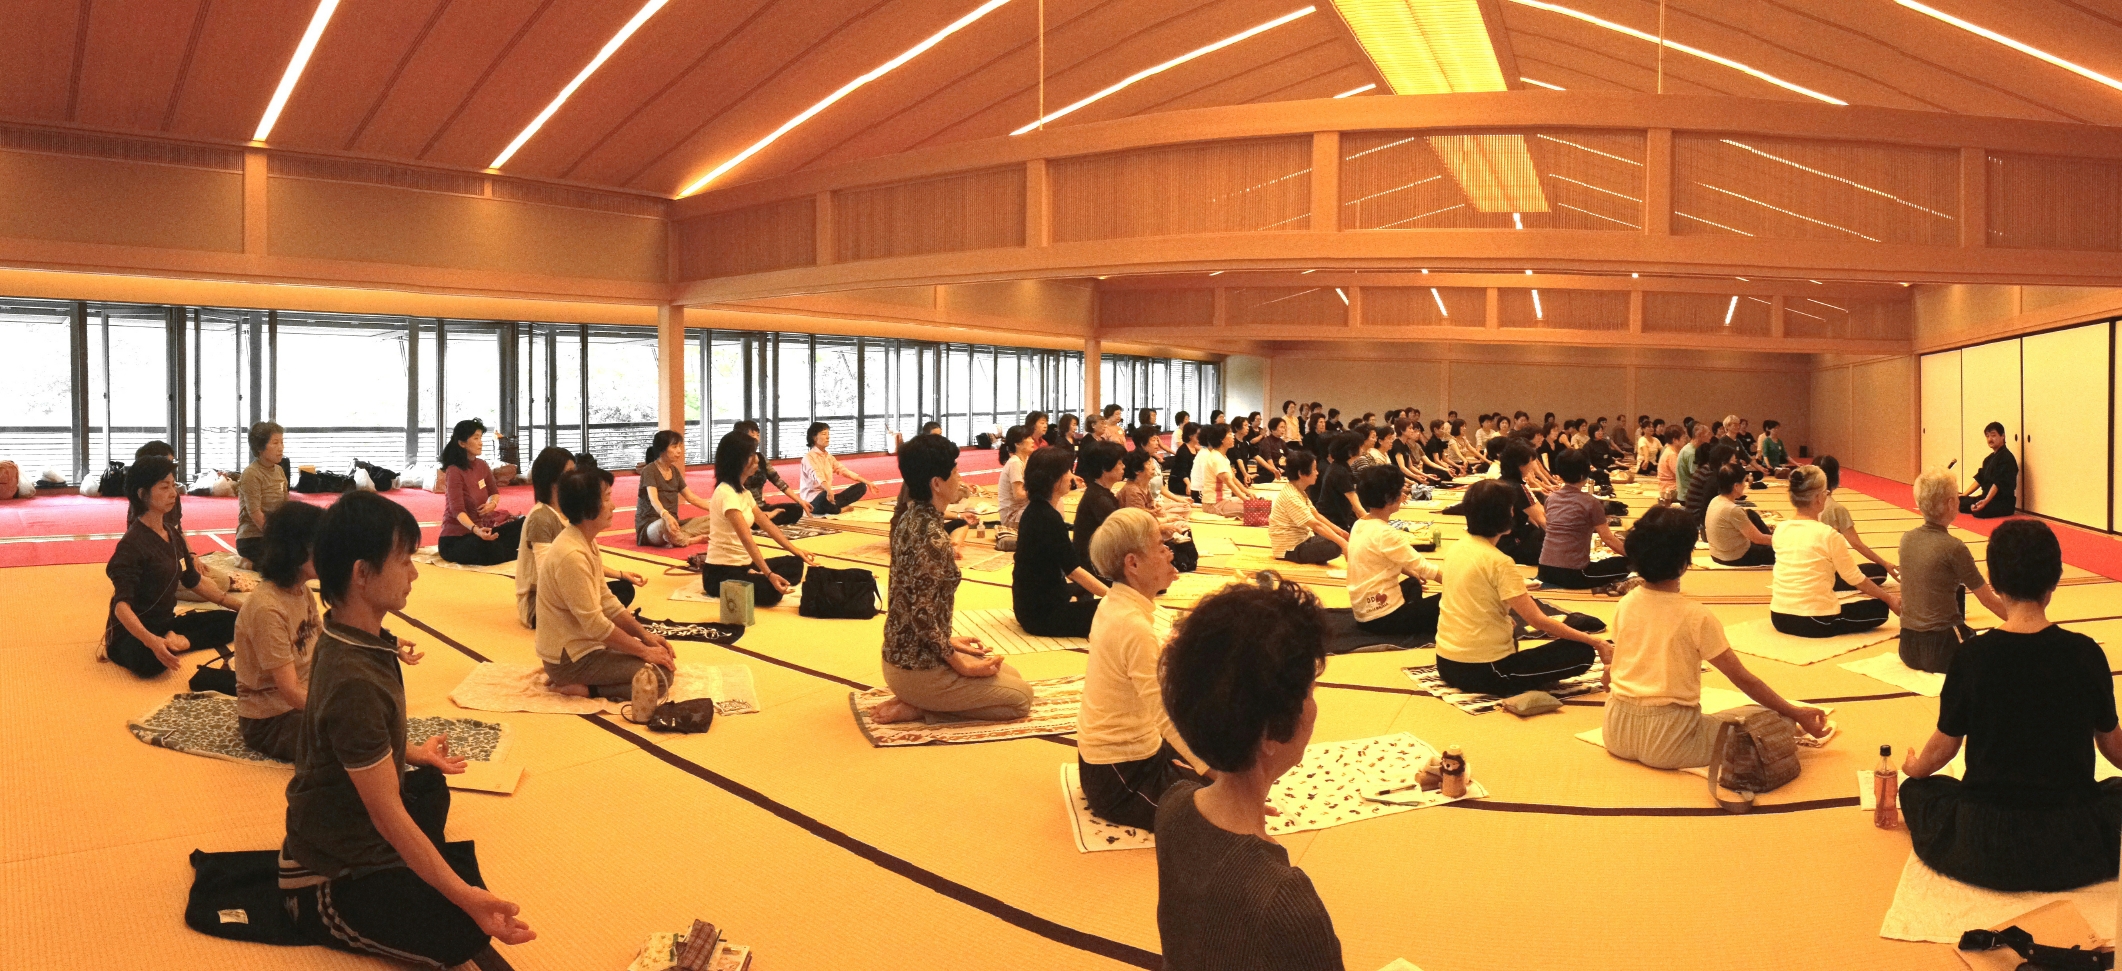 雄弘ヨーガの実践セミナー 嵐山が開催されました 純日本的ヨーガへのいざない Invitation To Pure Japanese Yoga